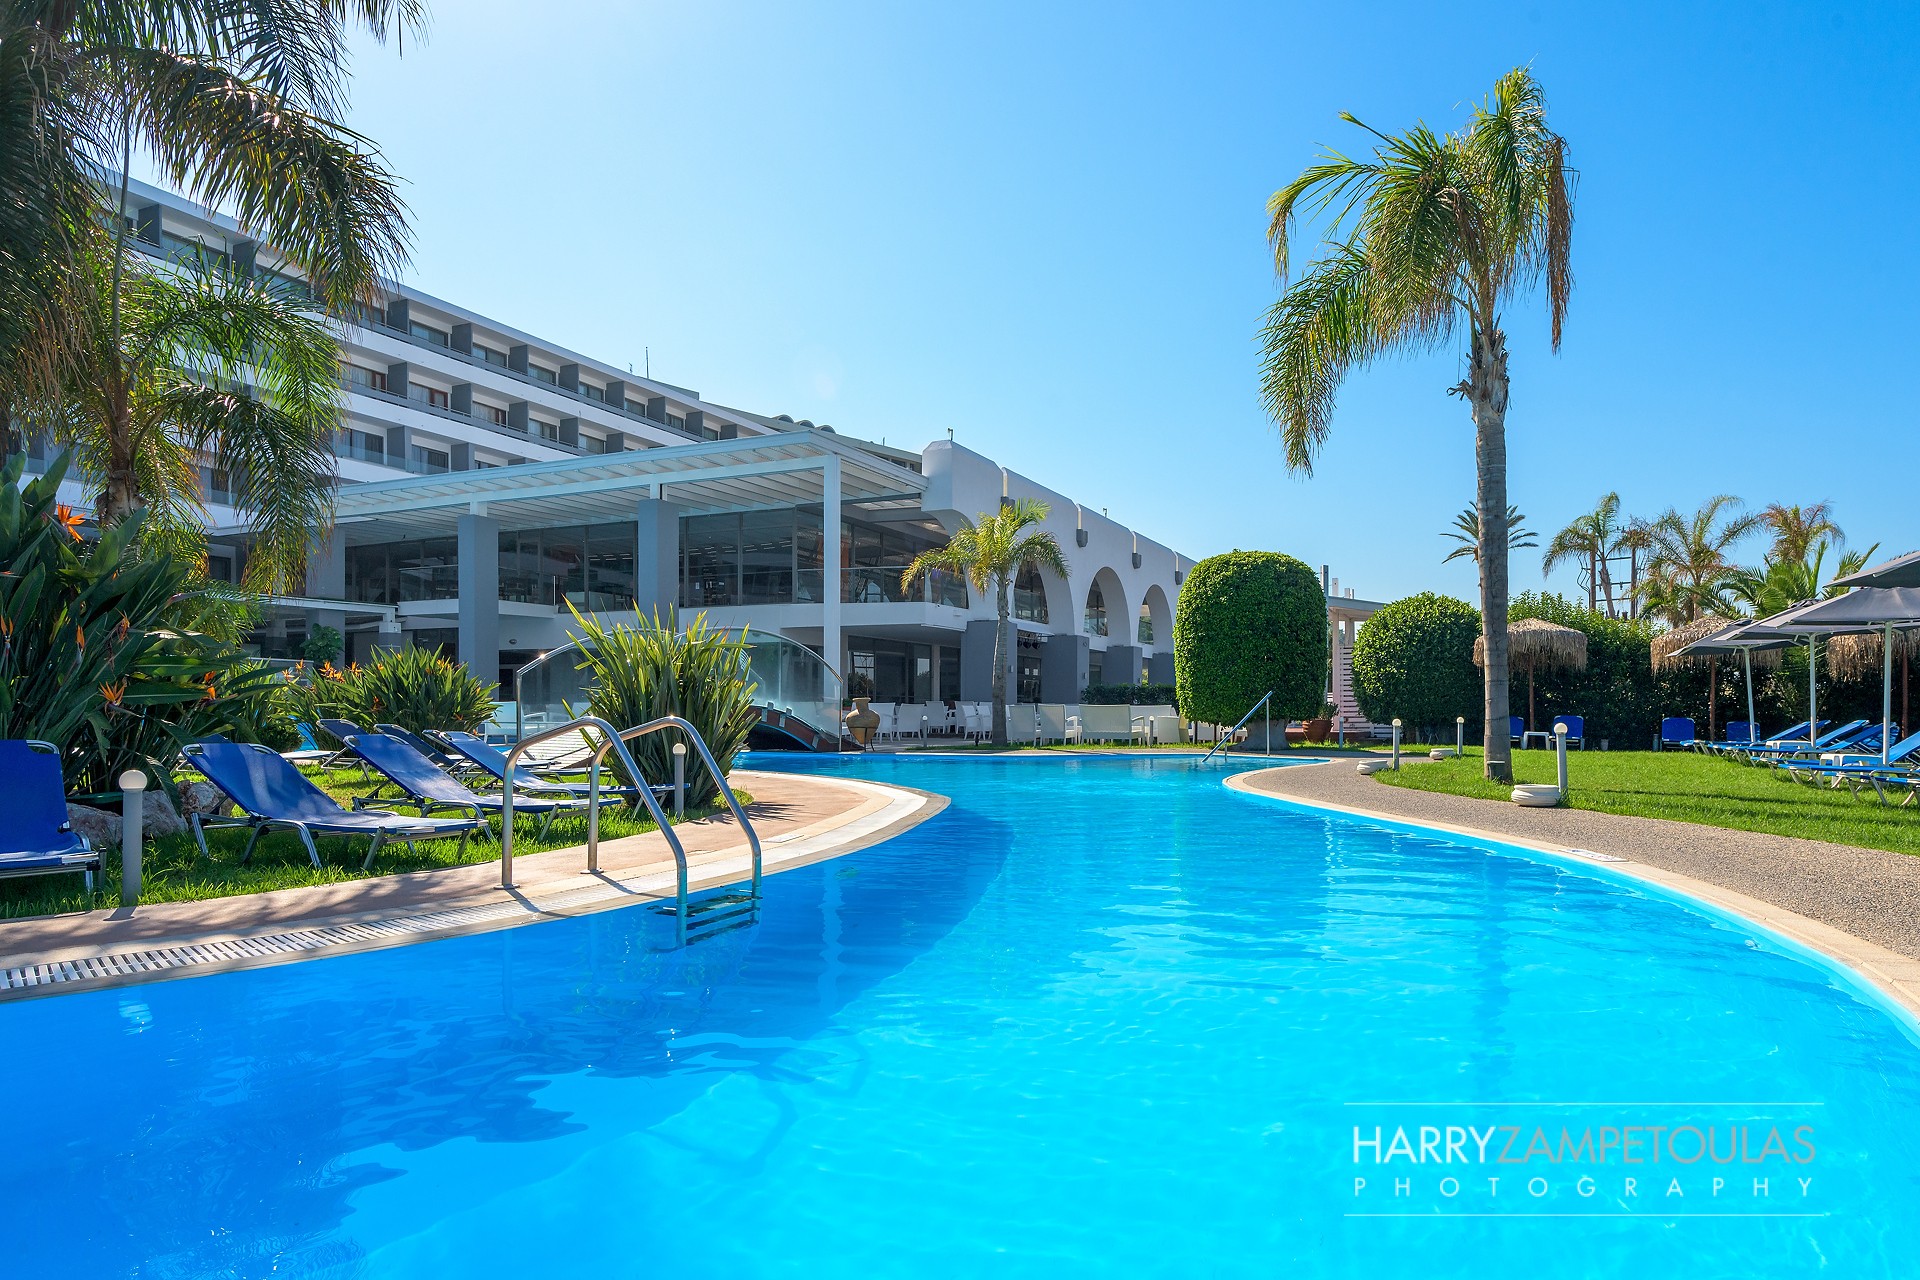 Oceanis-Hotel-Rhodes-Harry-Zampetoulas-Photography-23 Oceanis Hotel Rhodes - Φωτογράφιση Ξενοδοχείου Χάρης Ζαμπετούλας 